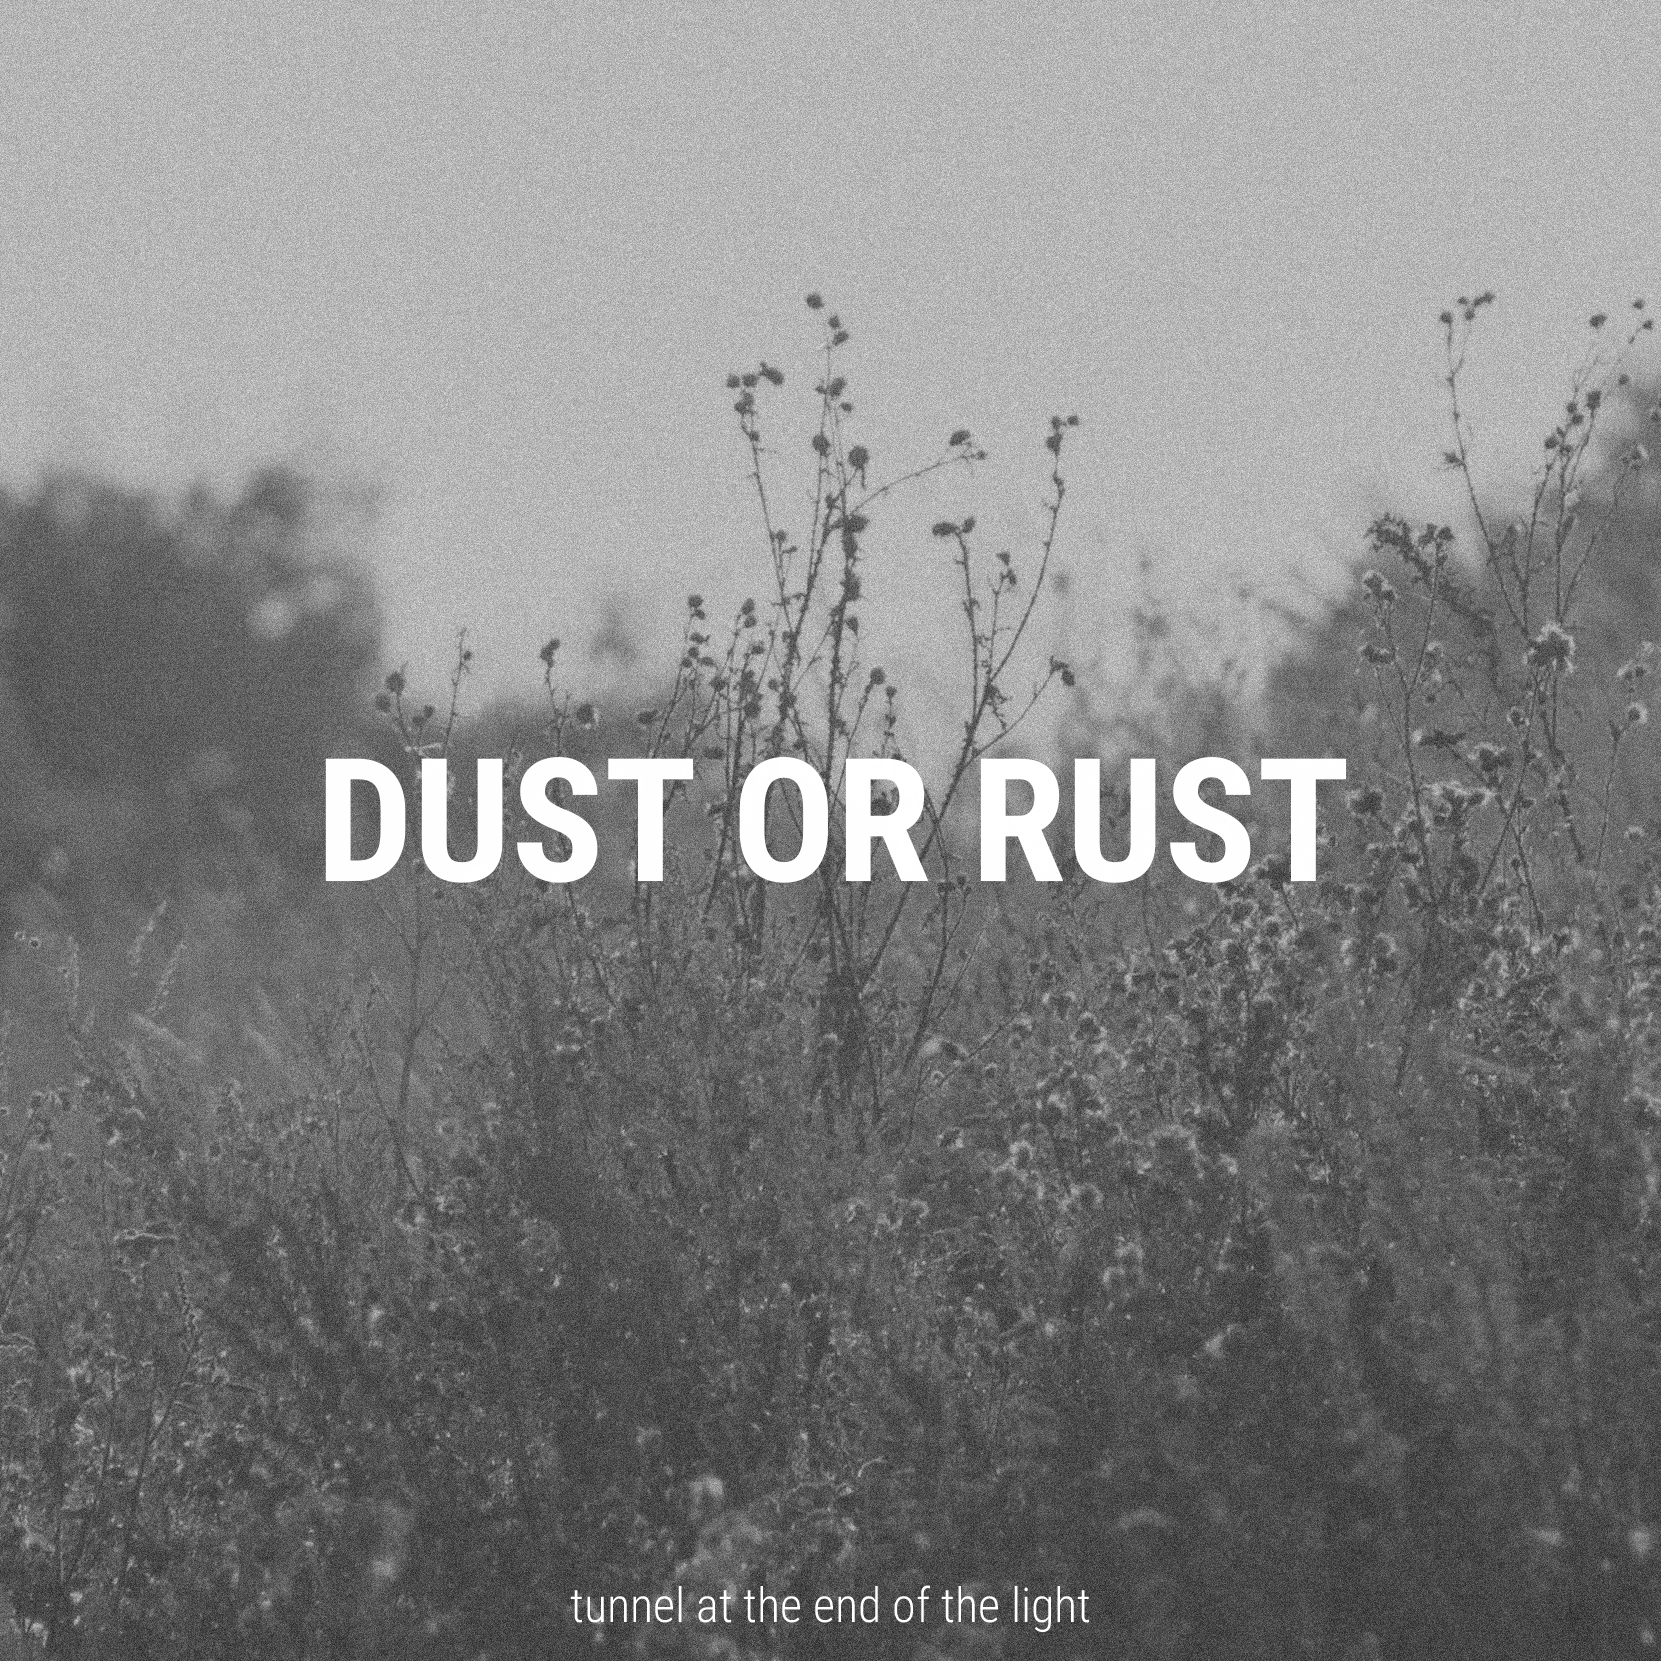 Breathe in rust dust